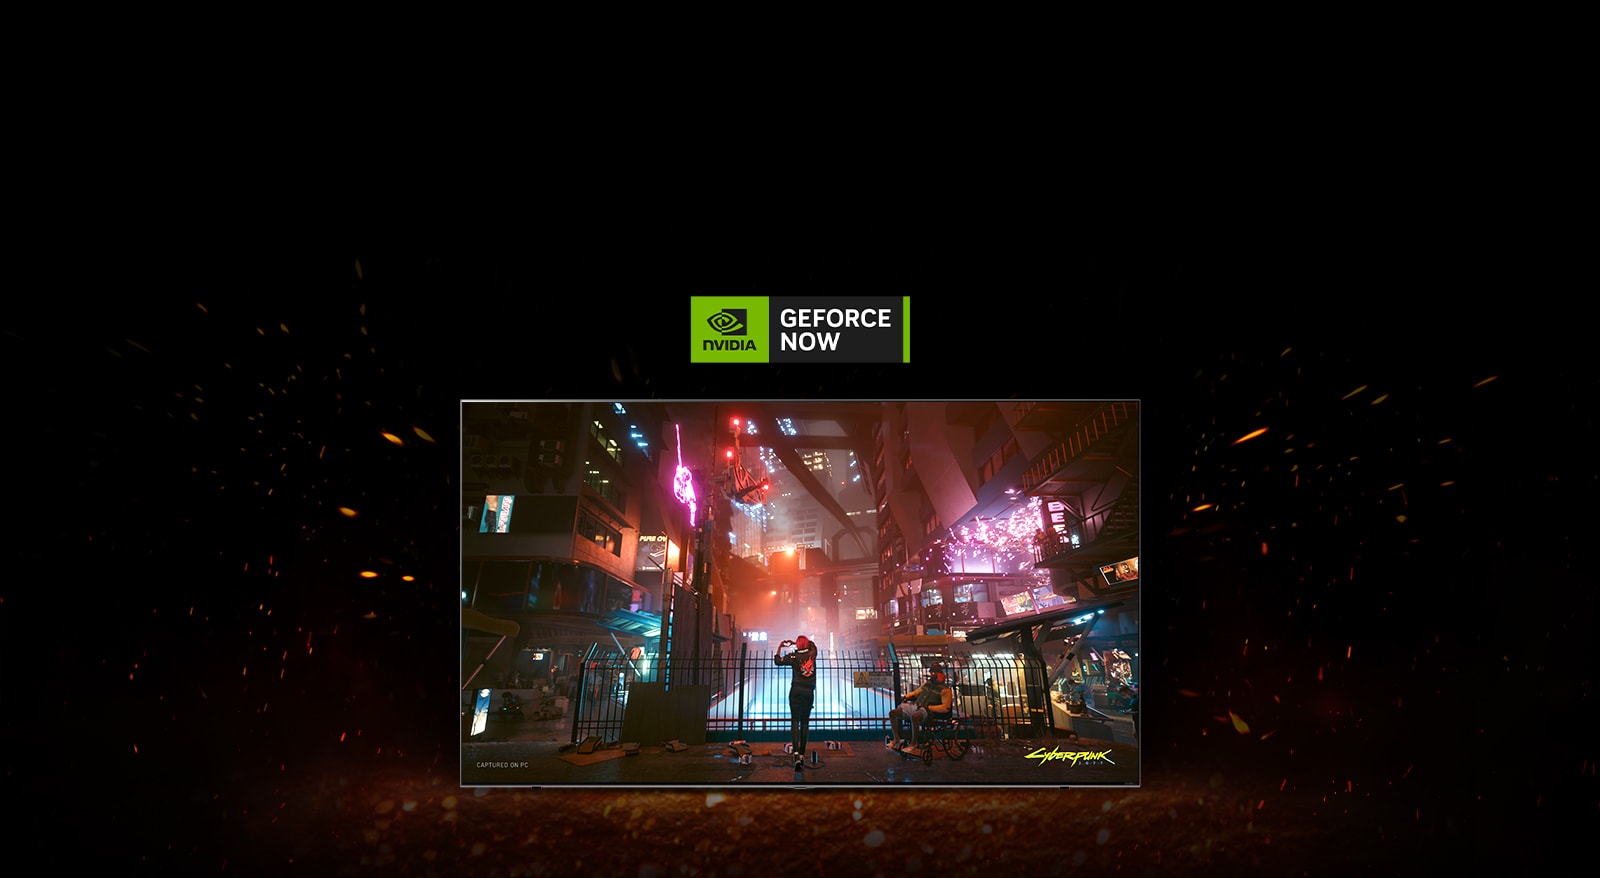 Kolem televizoru jiskří plameny a na obrazovce vidíme hru Cyberpunk. V horní části televizoru je umístěno logo Geforce NOW.